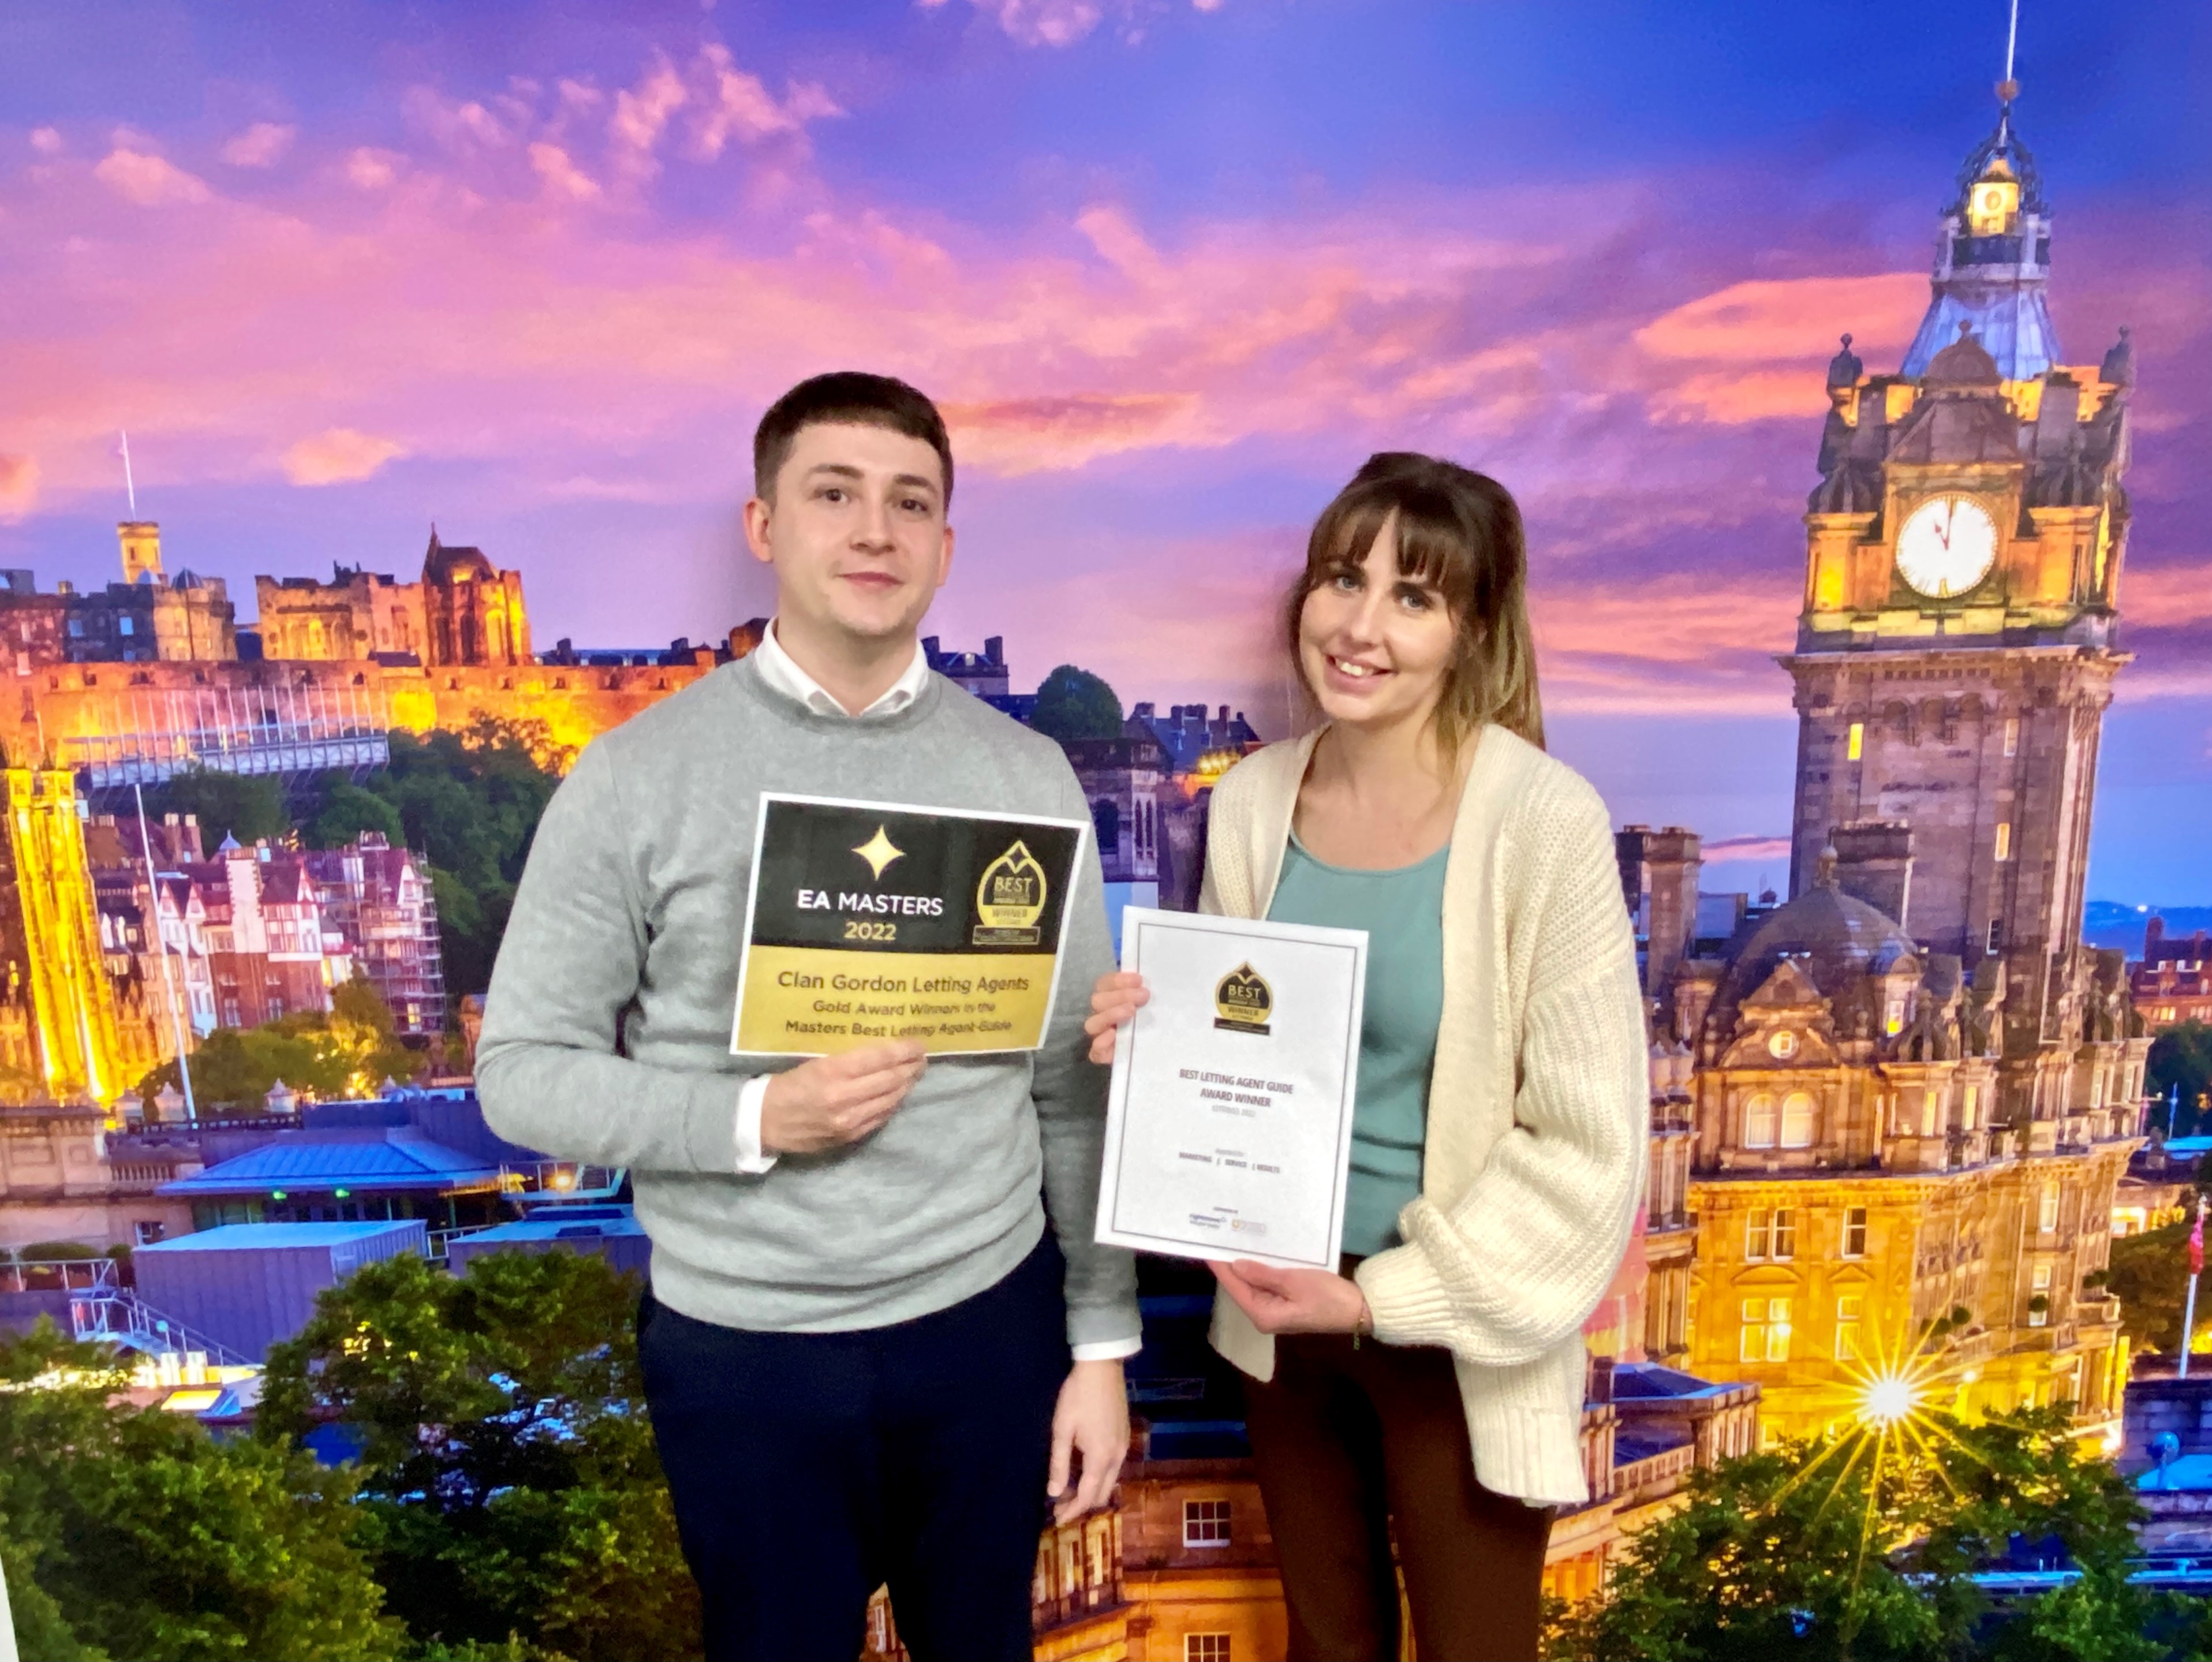 Edinburgh letting agency Clan Gordon wins gold award